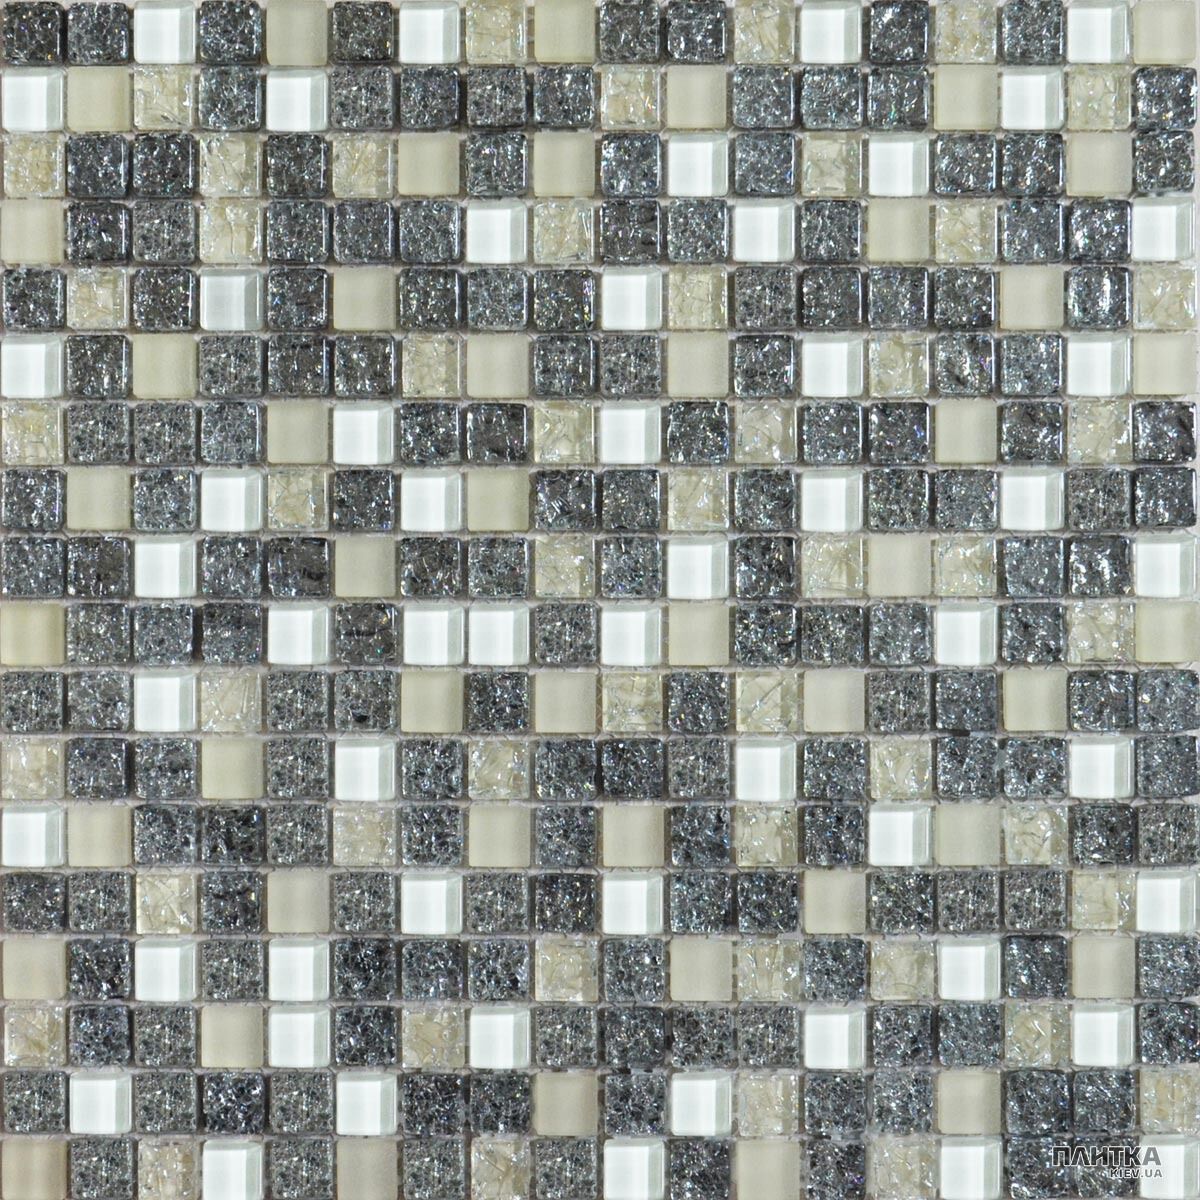 Мозаїка Grand Kerama 2100 Мозаїка мікс платина колота-білий-охра білий,платиновий,кремовий